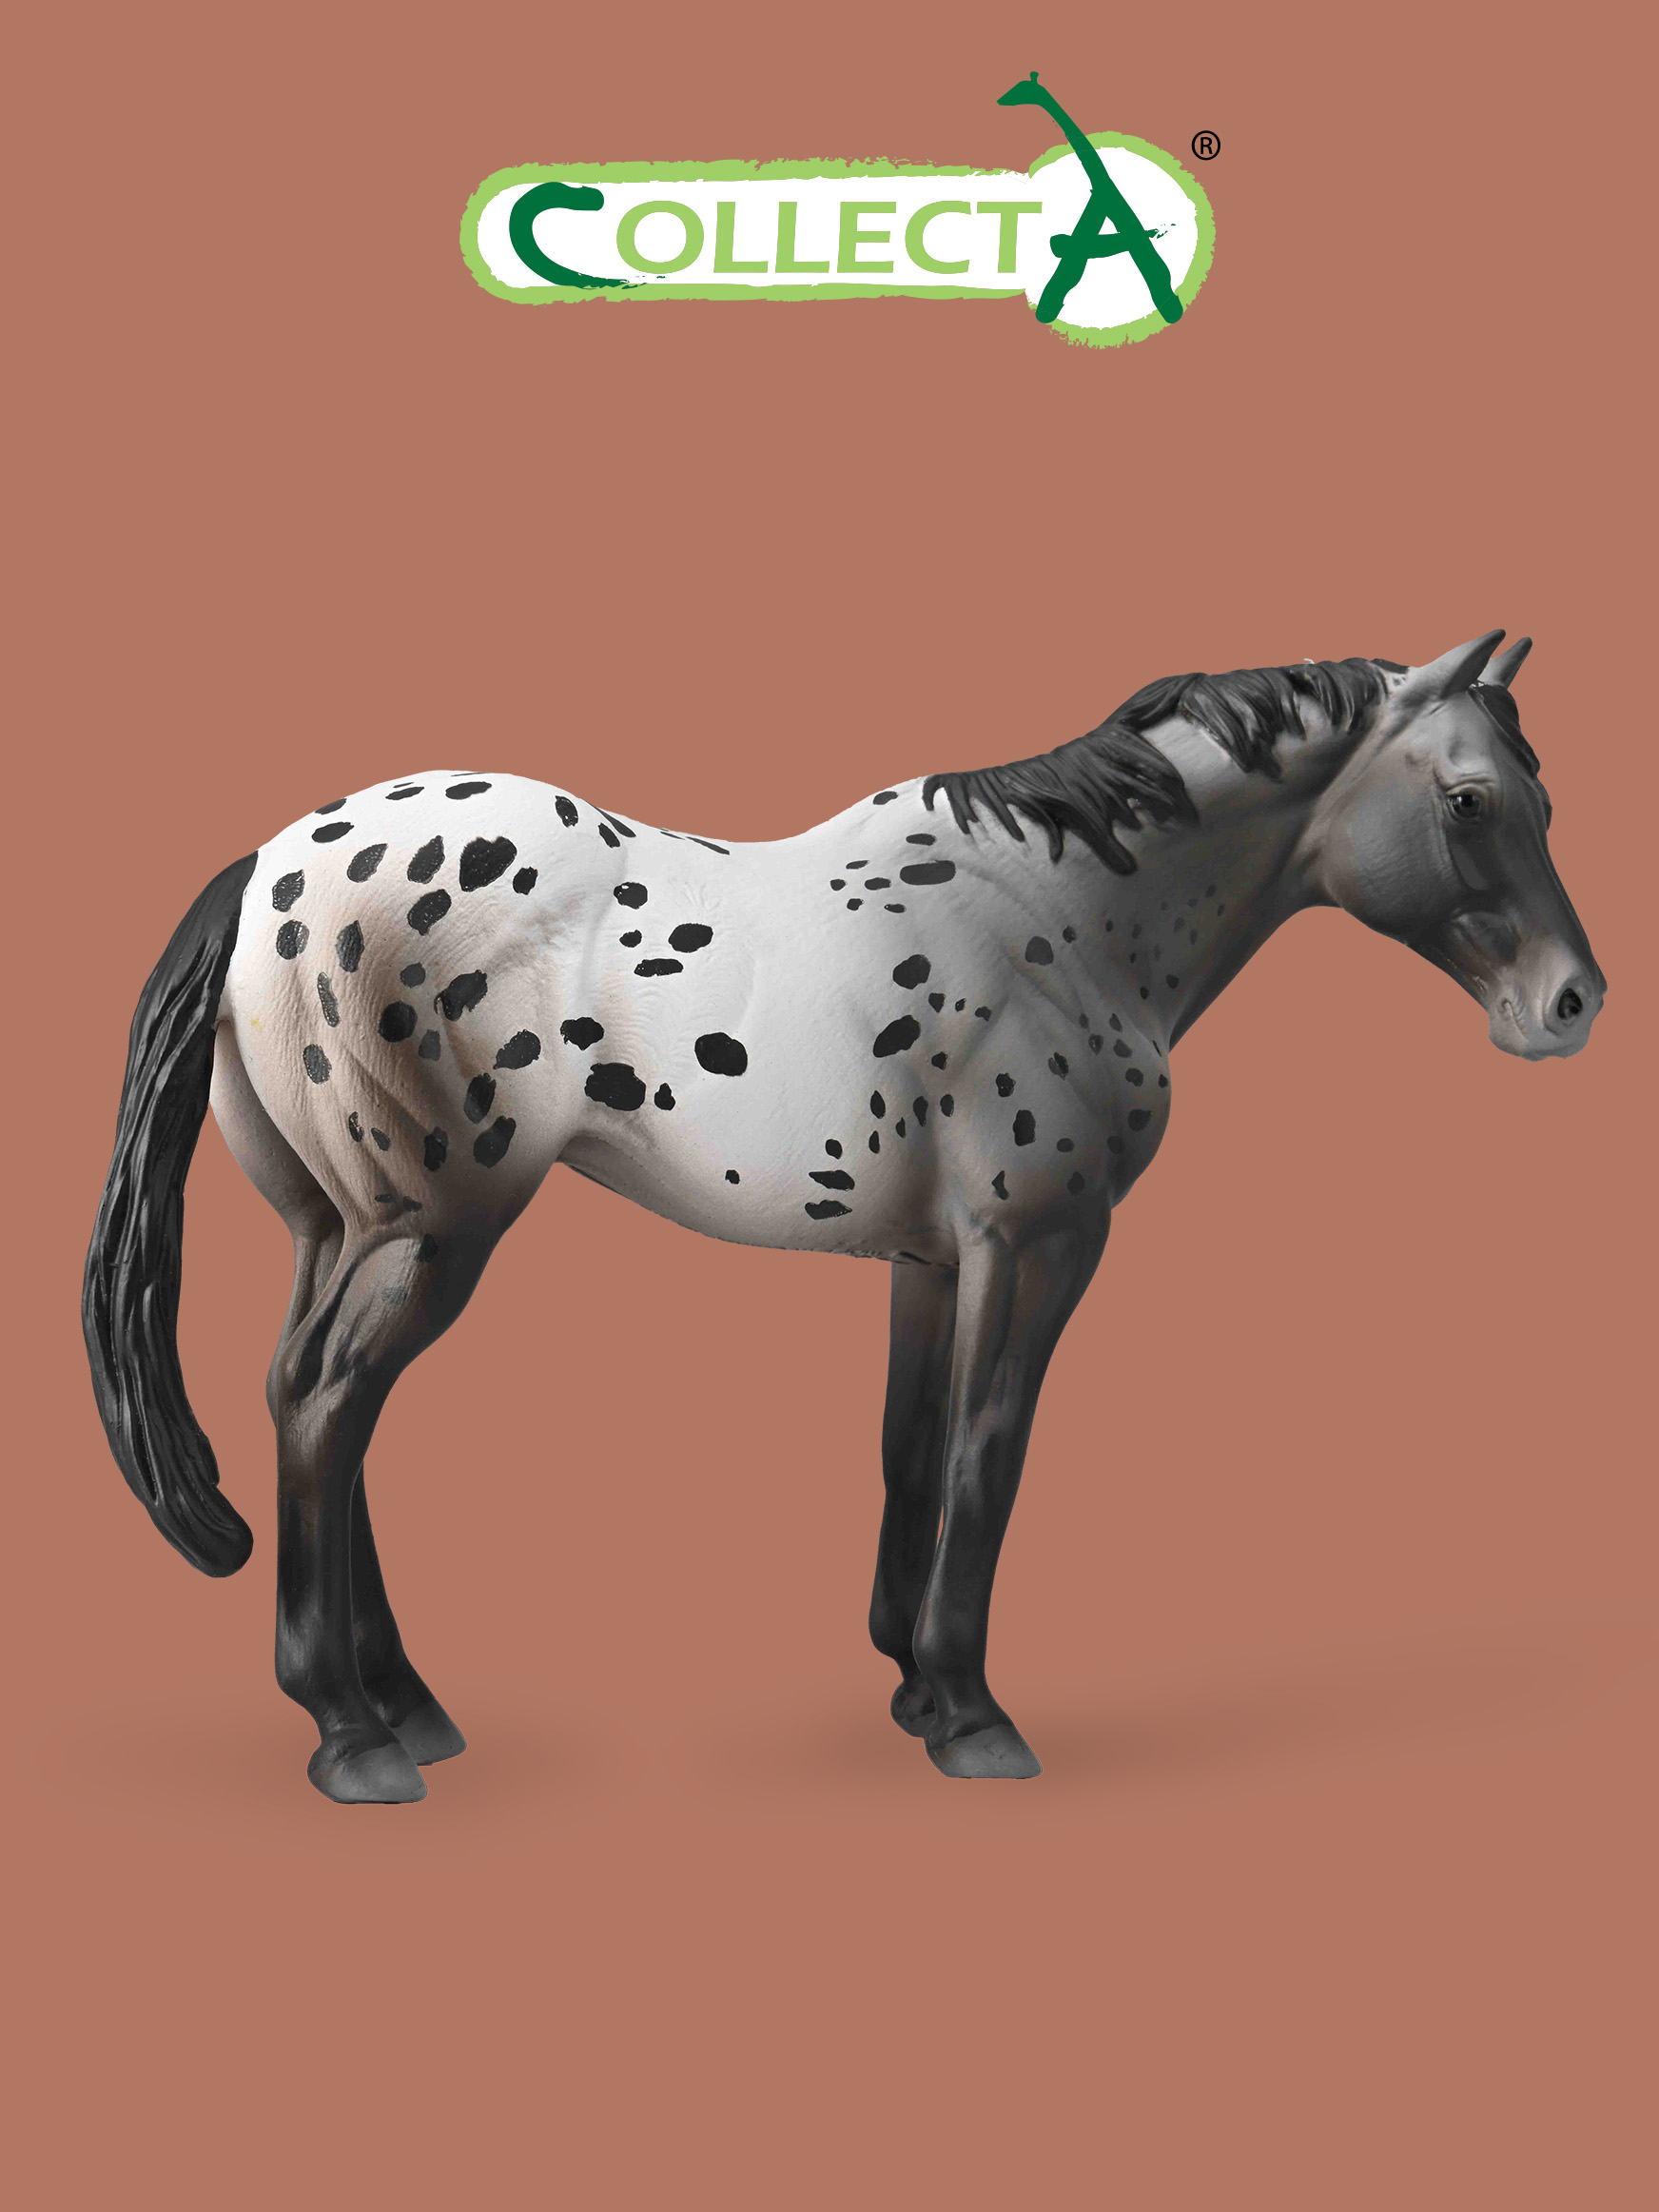 Фигурка Collecta животного Лошадь Аппалузский голубой чалый collecta фигурка американская кремовая лошадь xl